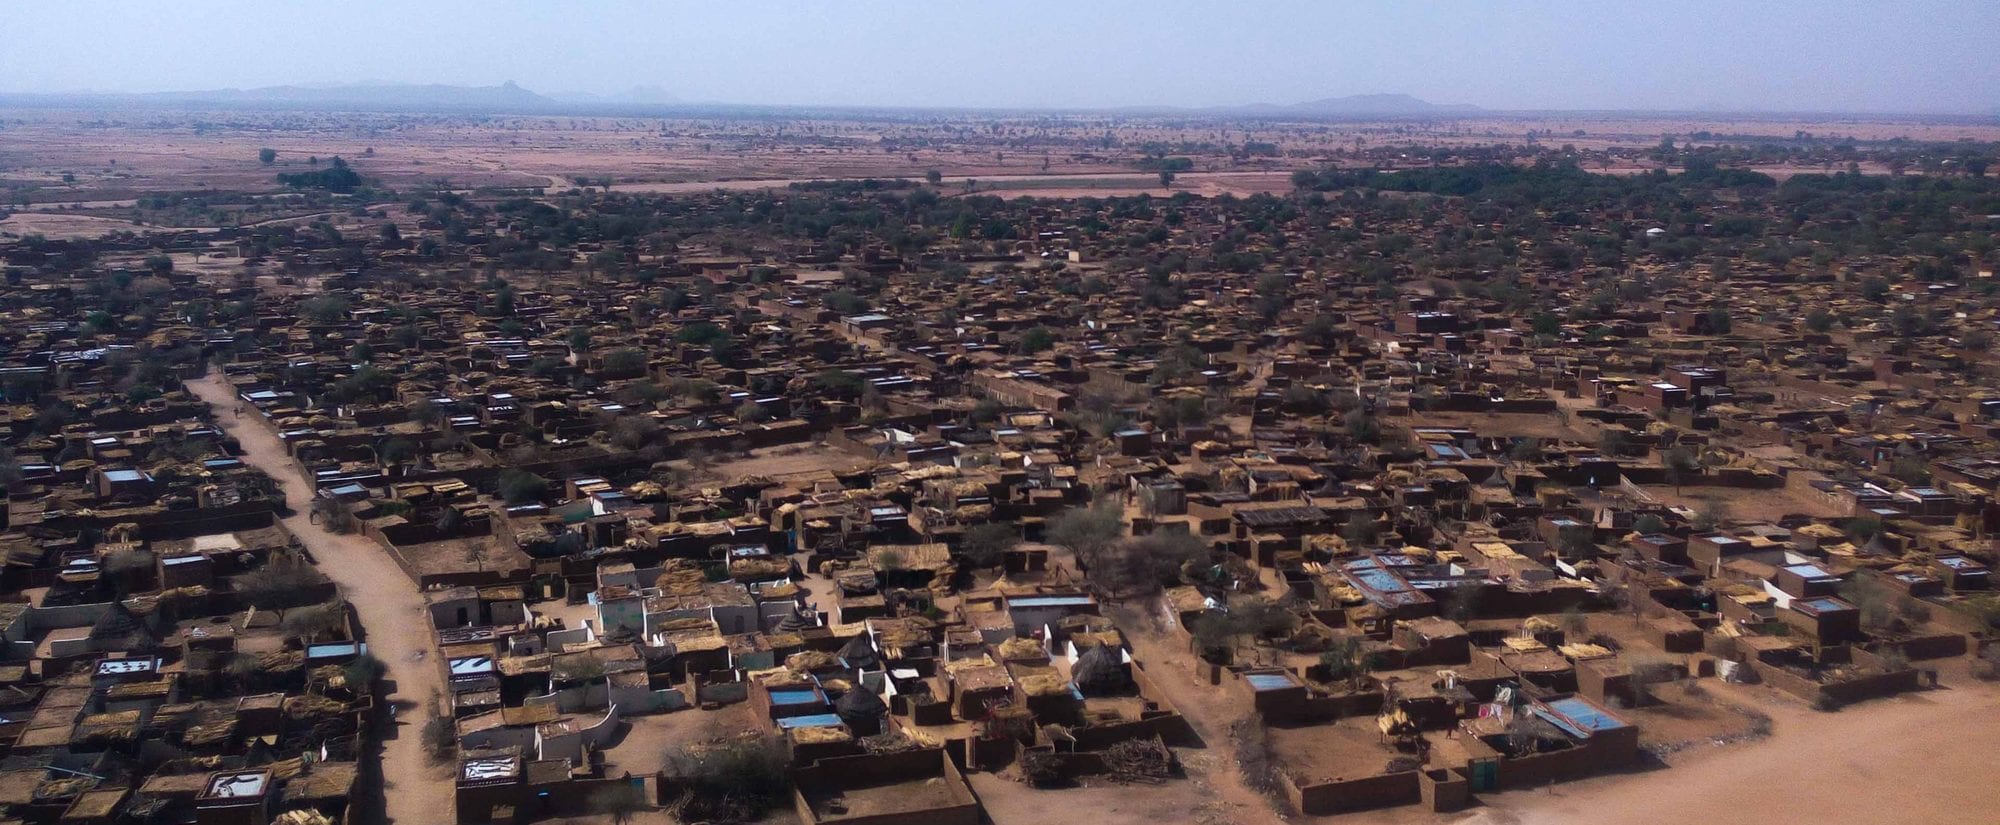 ولاية شمال دارفور محلية كبكابية